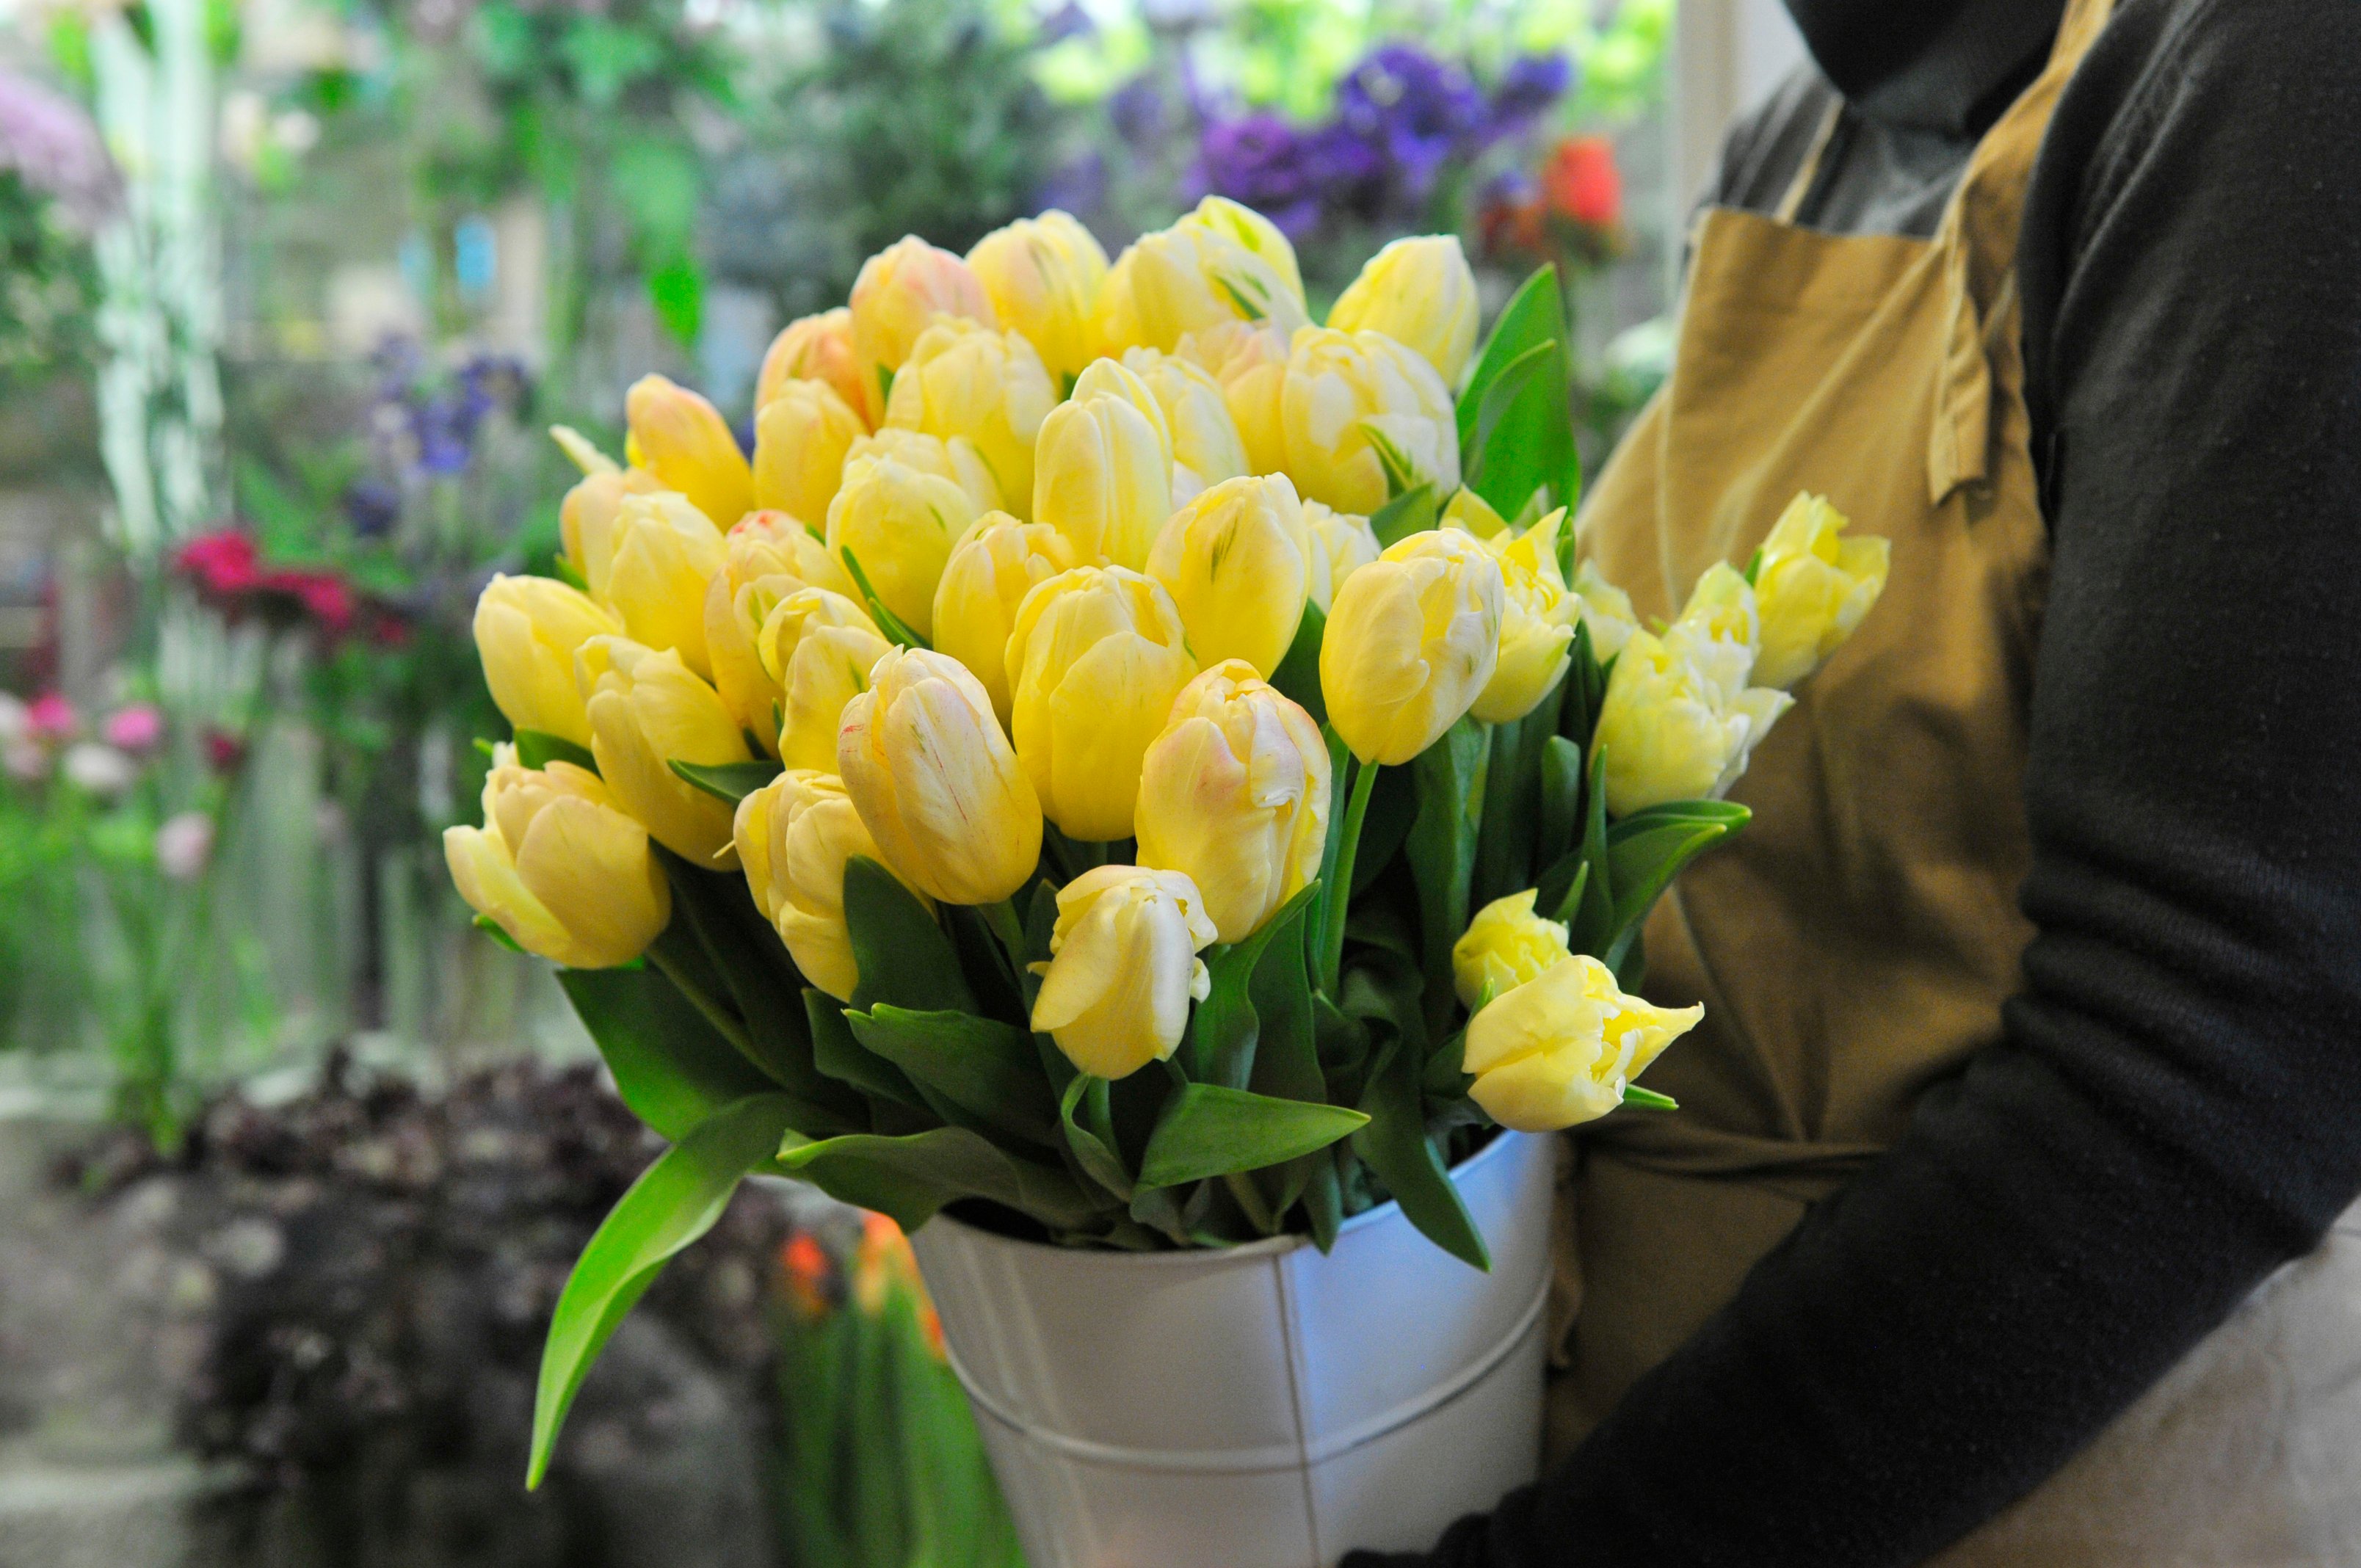 En florist håller en bunt gula tulpaner i famnen